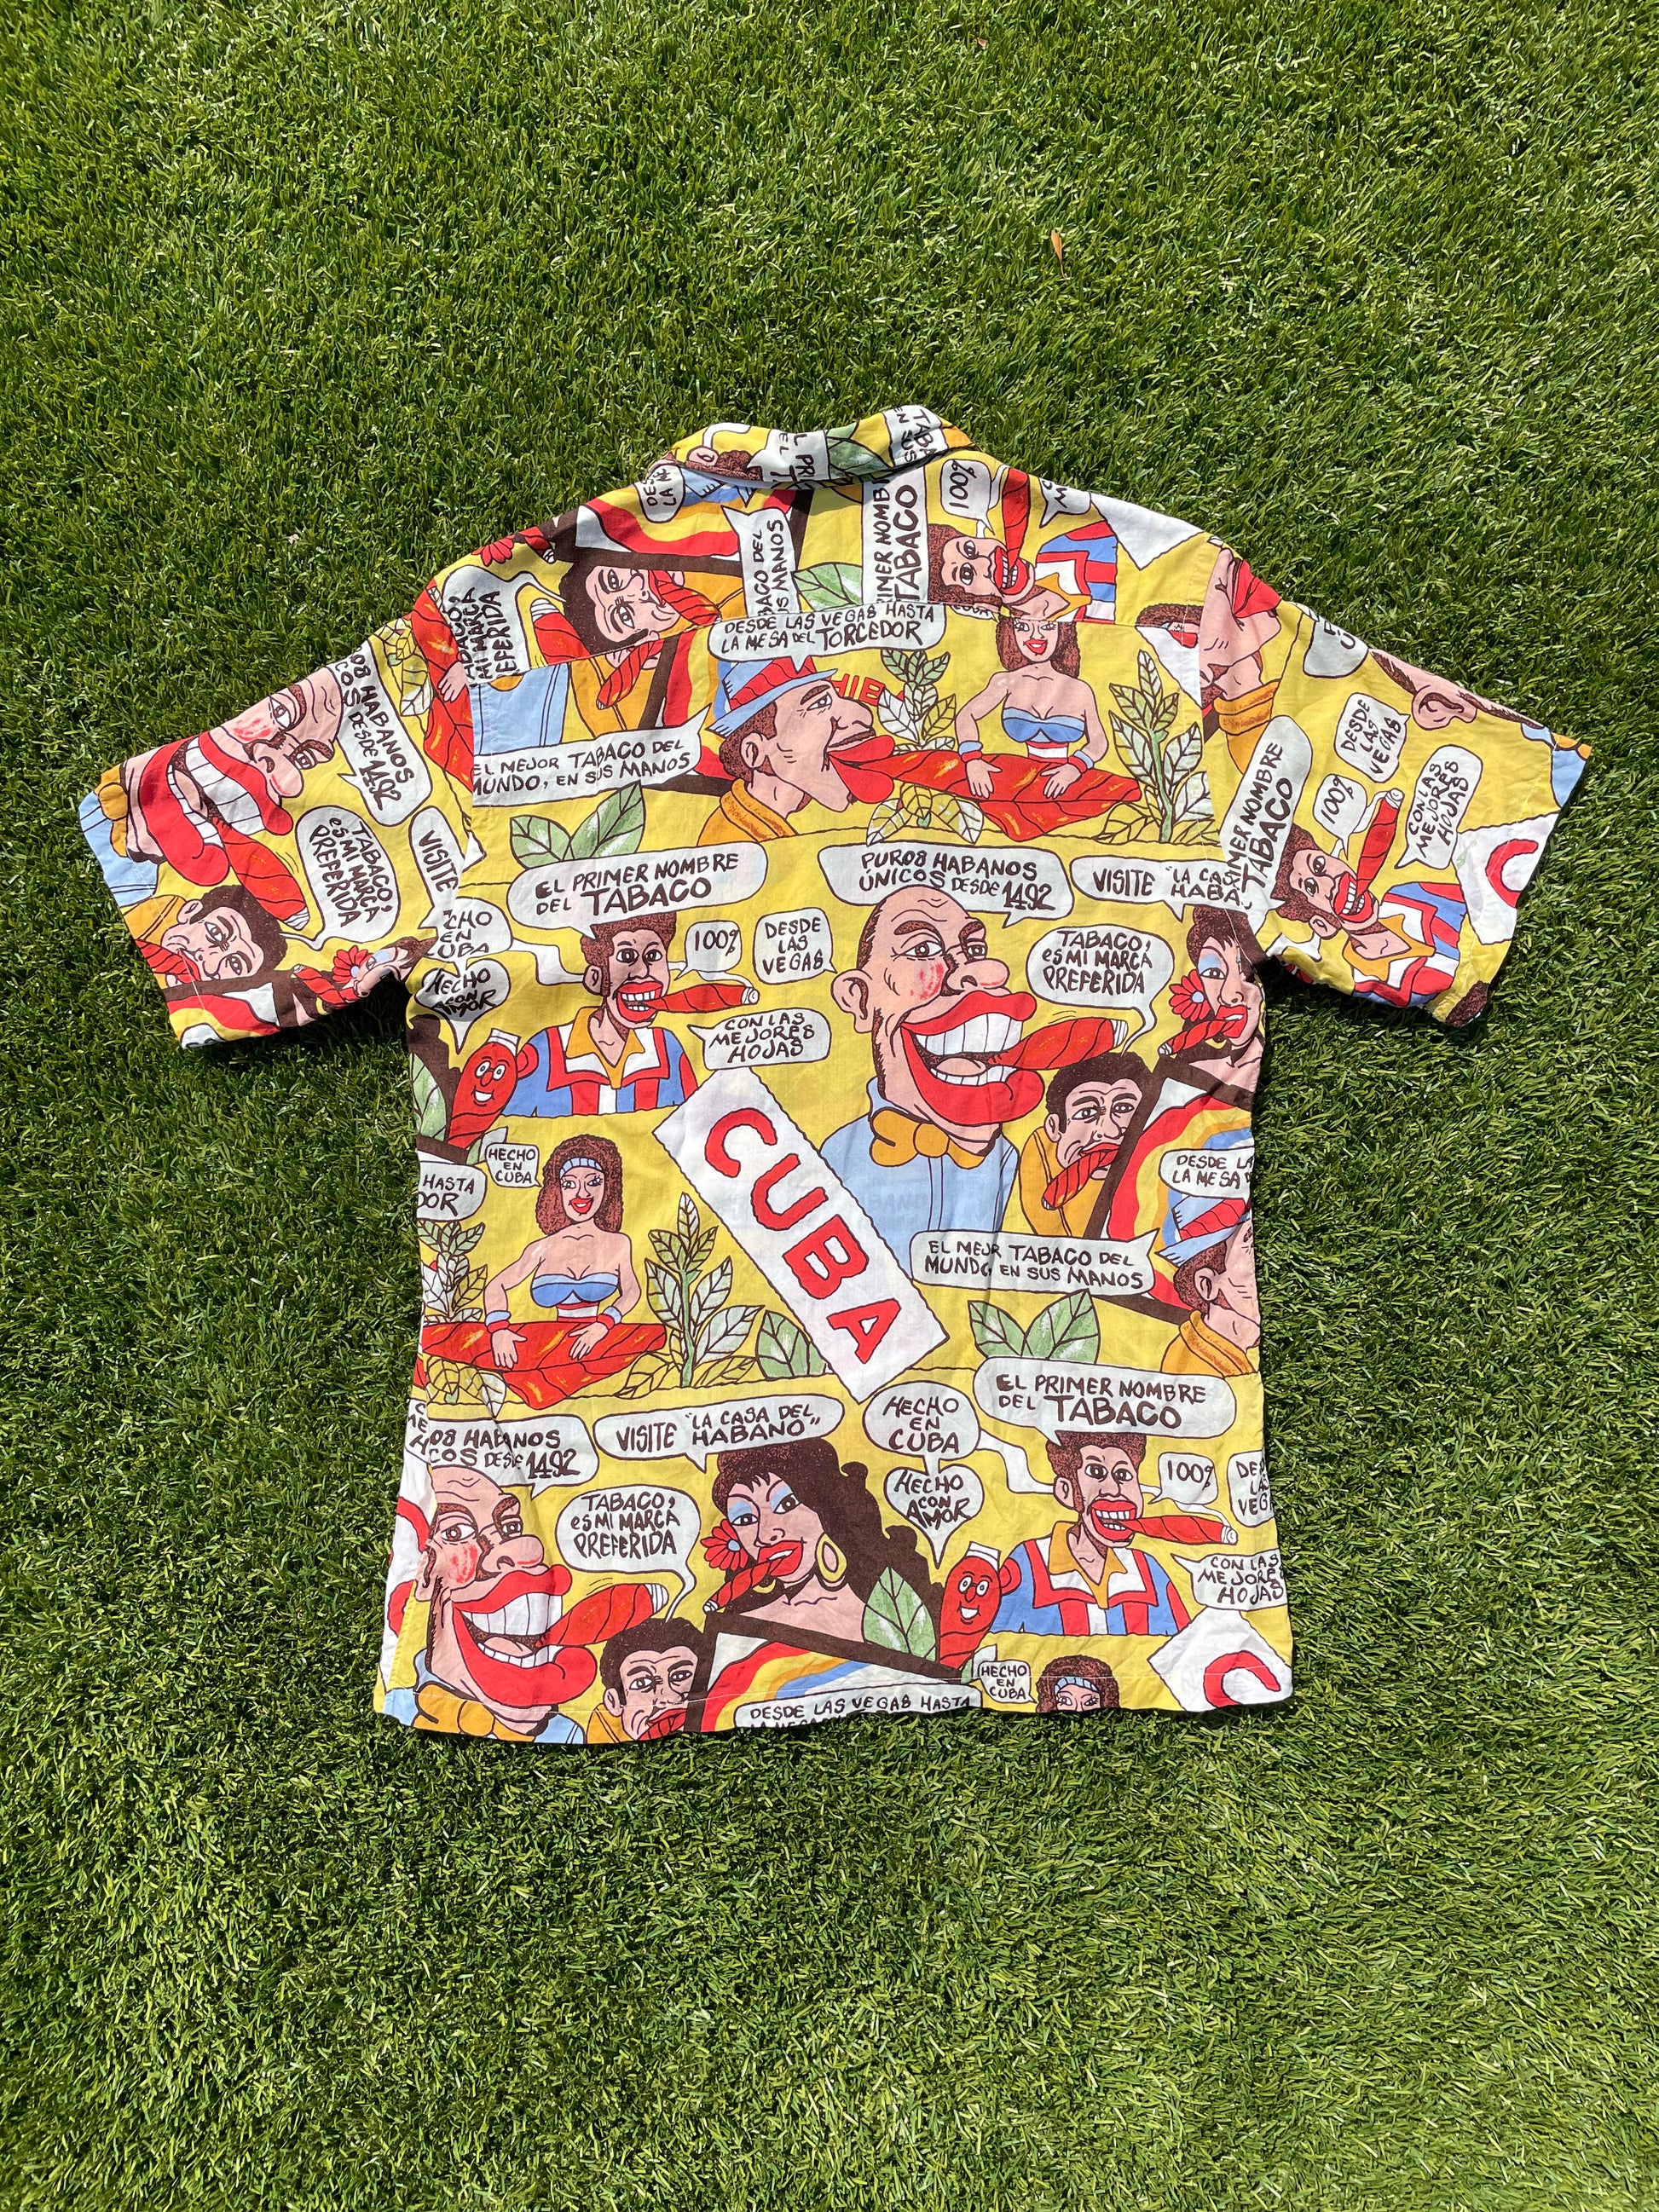 Supreme x Comme des Garçons SHIRT Patchwork Button Up Shirt 'Multicolor